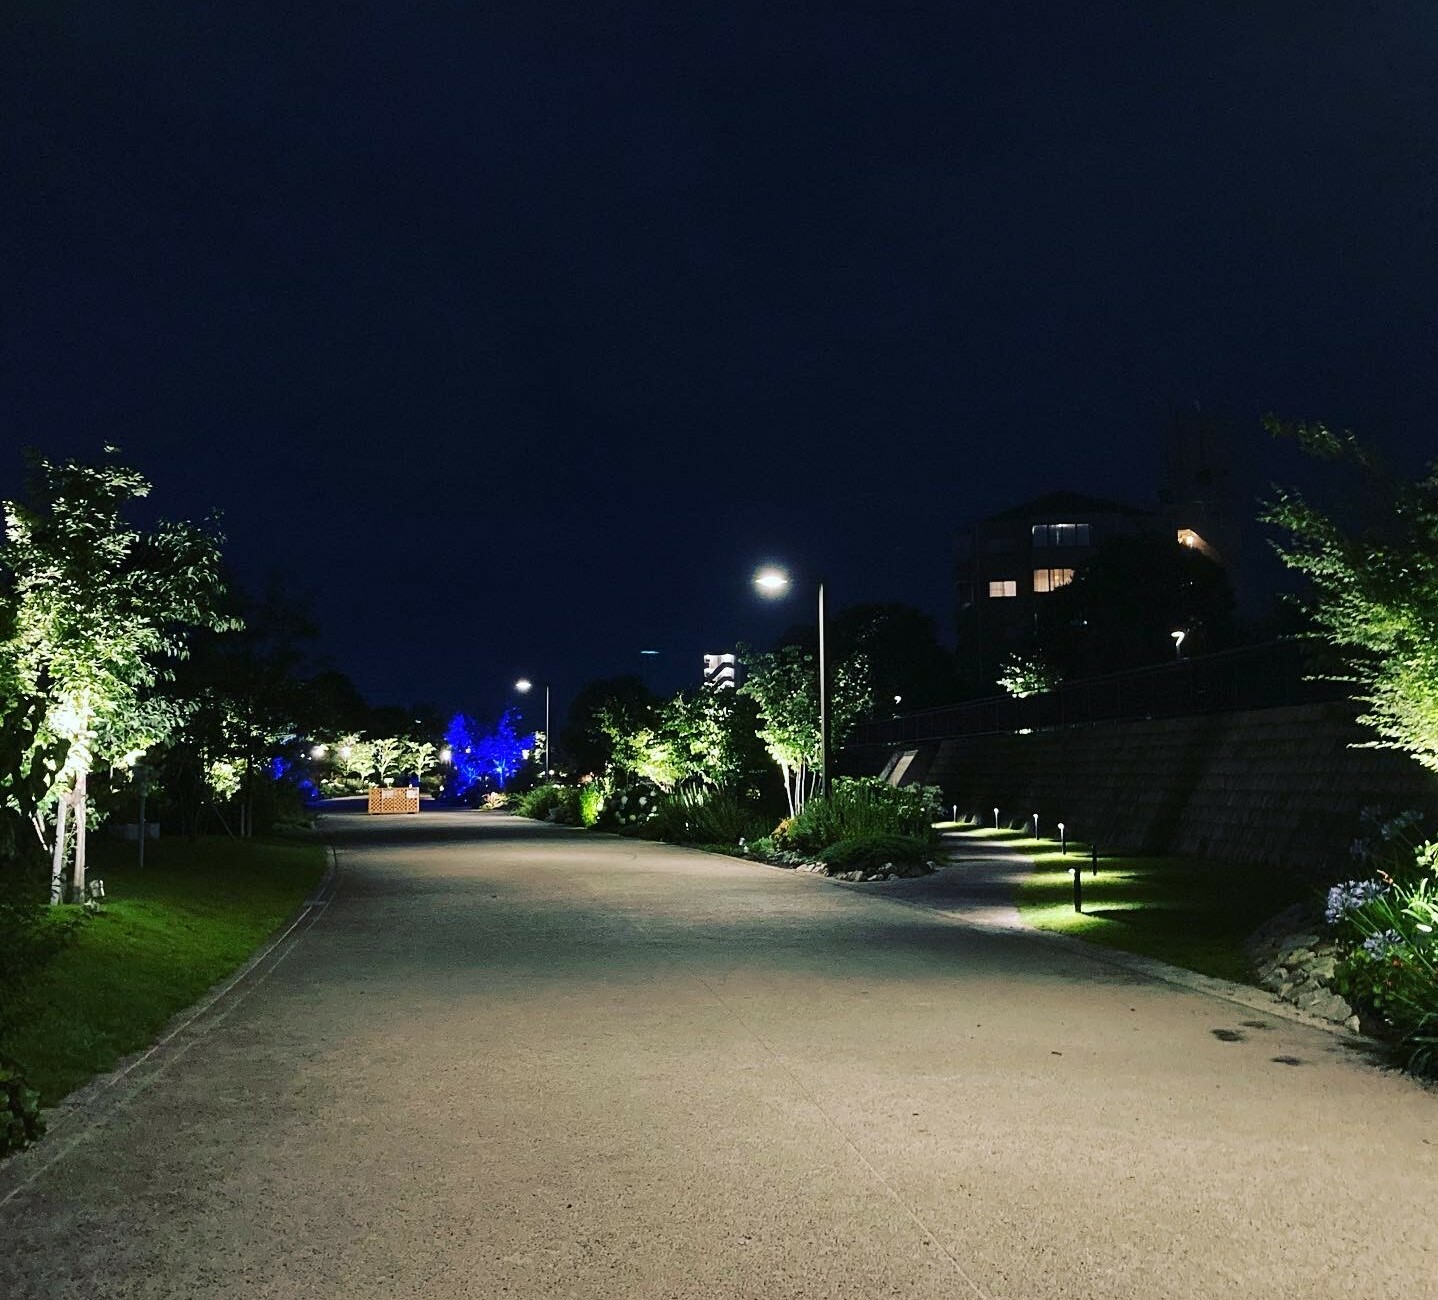 ※画像は、夜の「草津川跡地公園de愛ひろば」の様子。